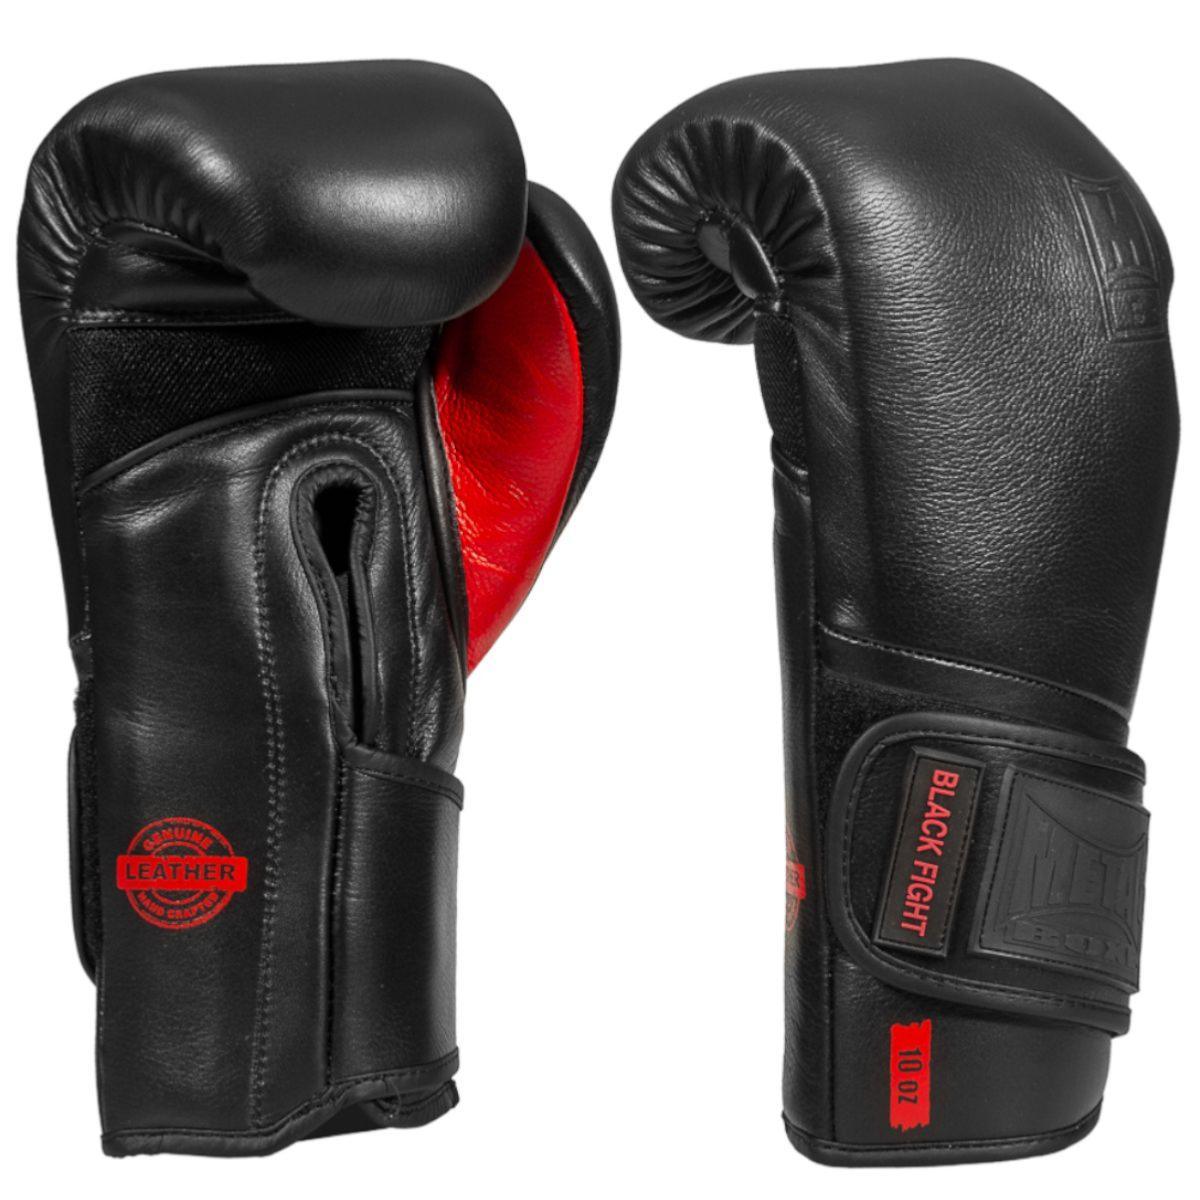 Gants de Boxe en cuir Metal Boxe Black Fight 10 Oz - Boutique des Arts Martiaux et Sports de Combat